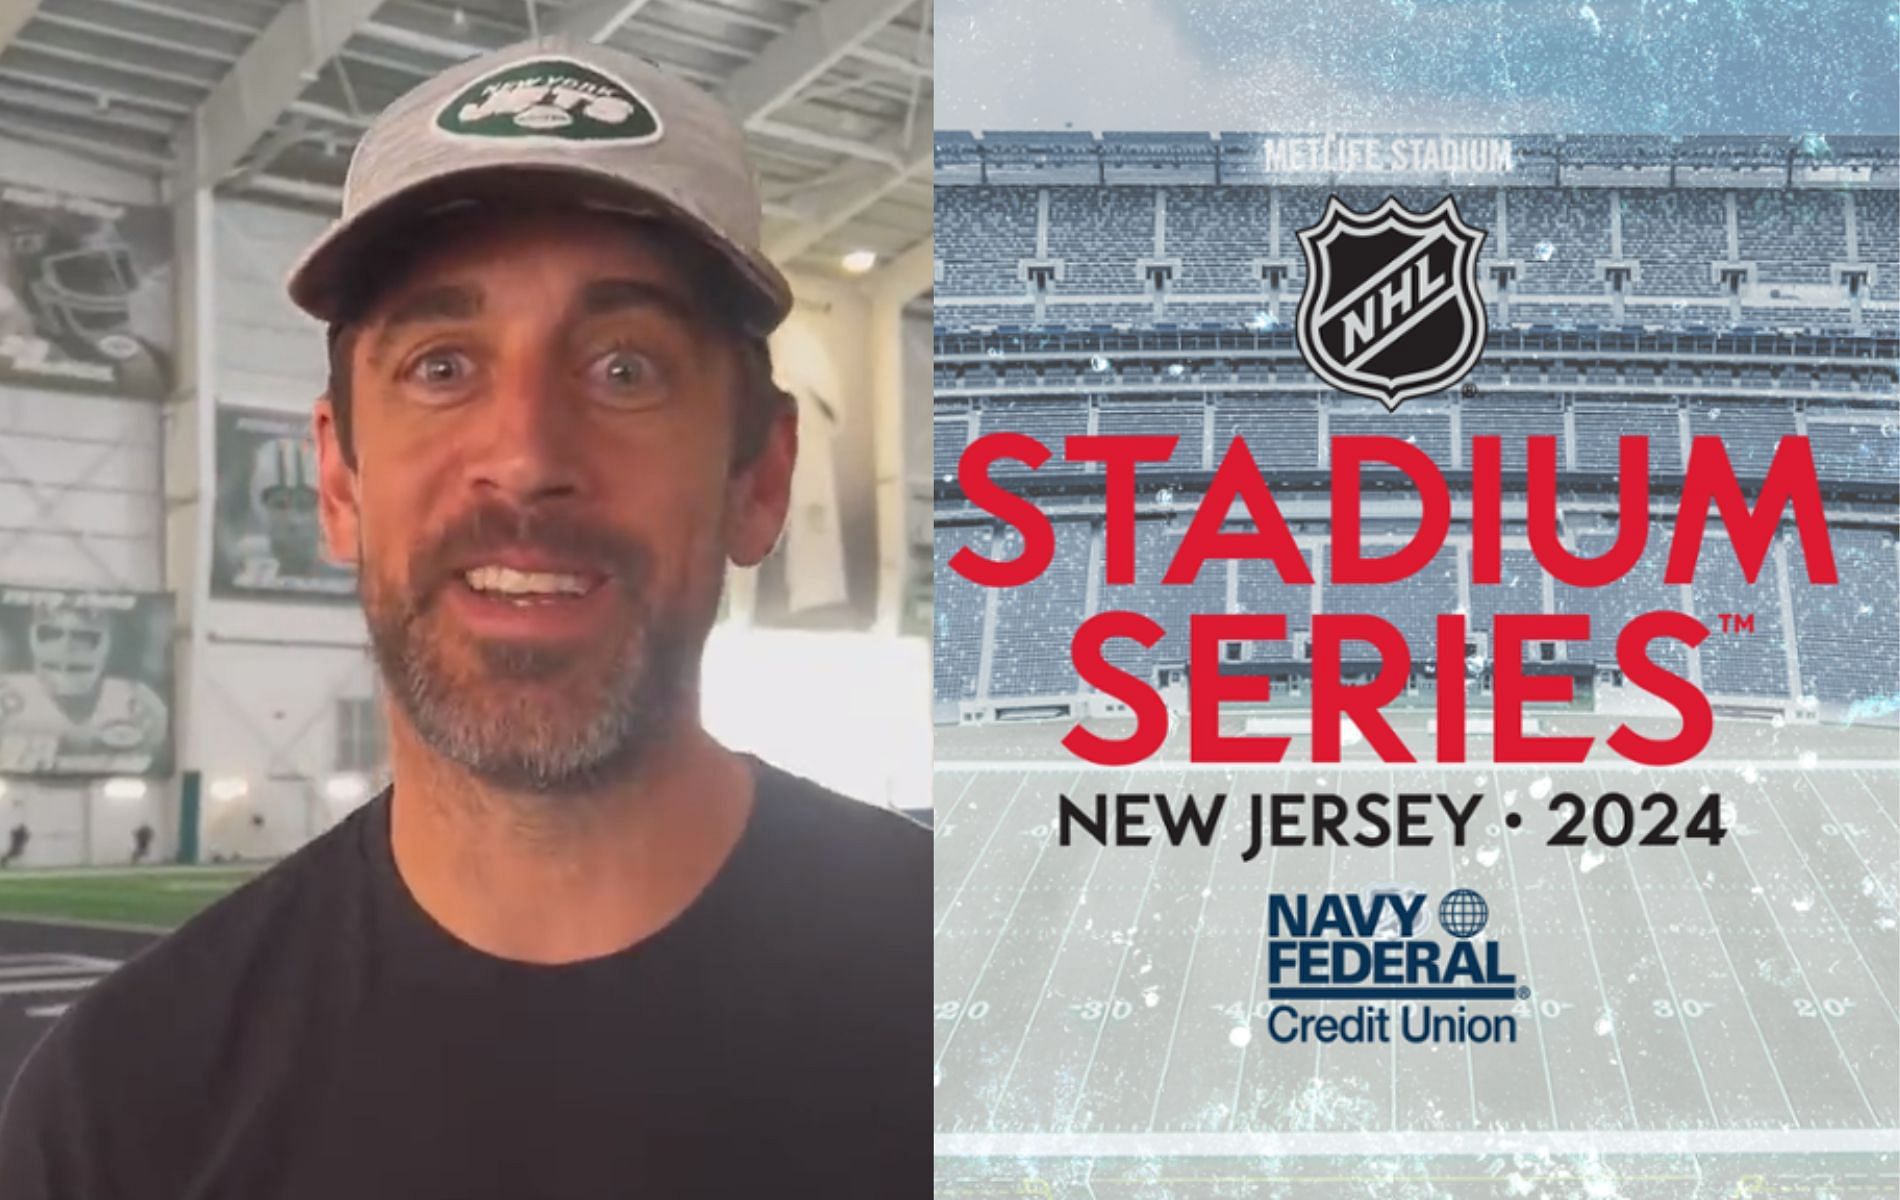 NHL Stadium Series Jerseys, NHL 2023 Stadium Series Gear, T-Shirts